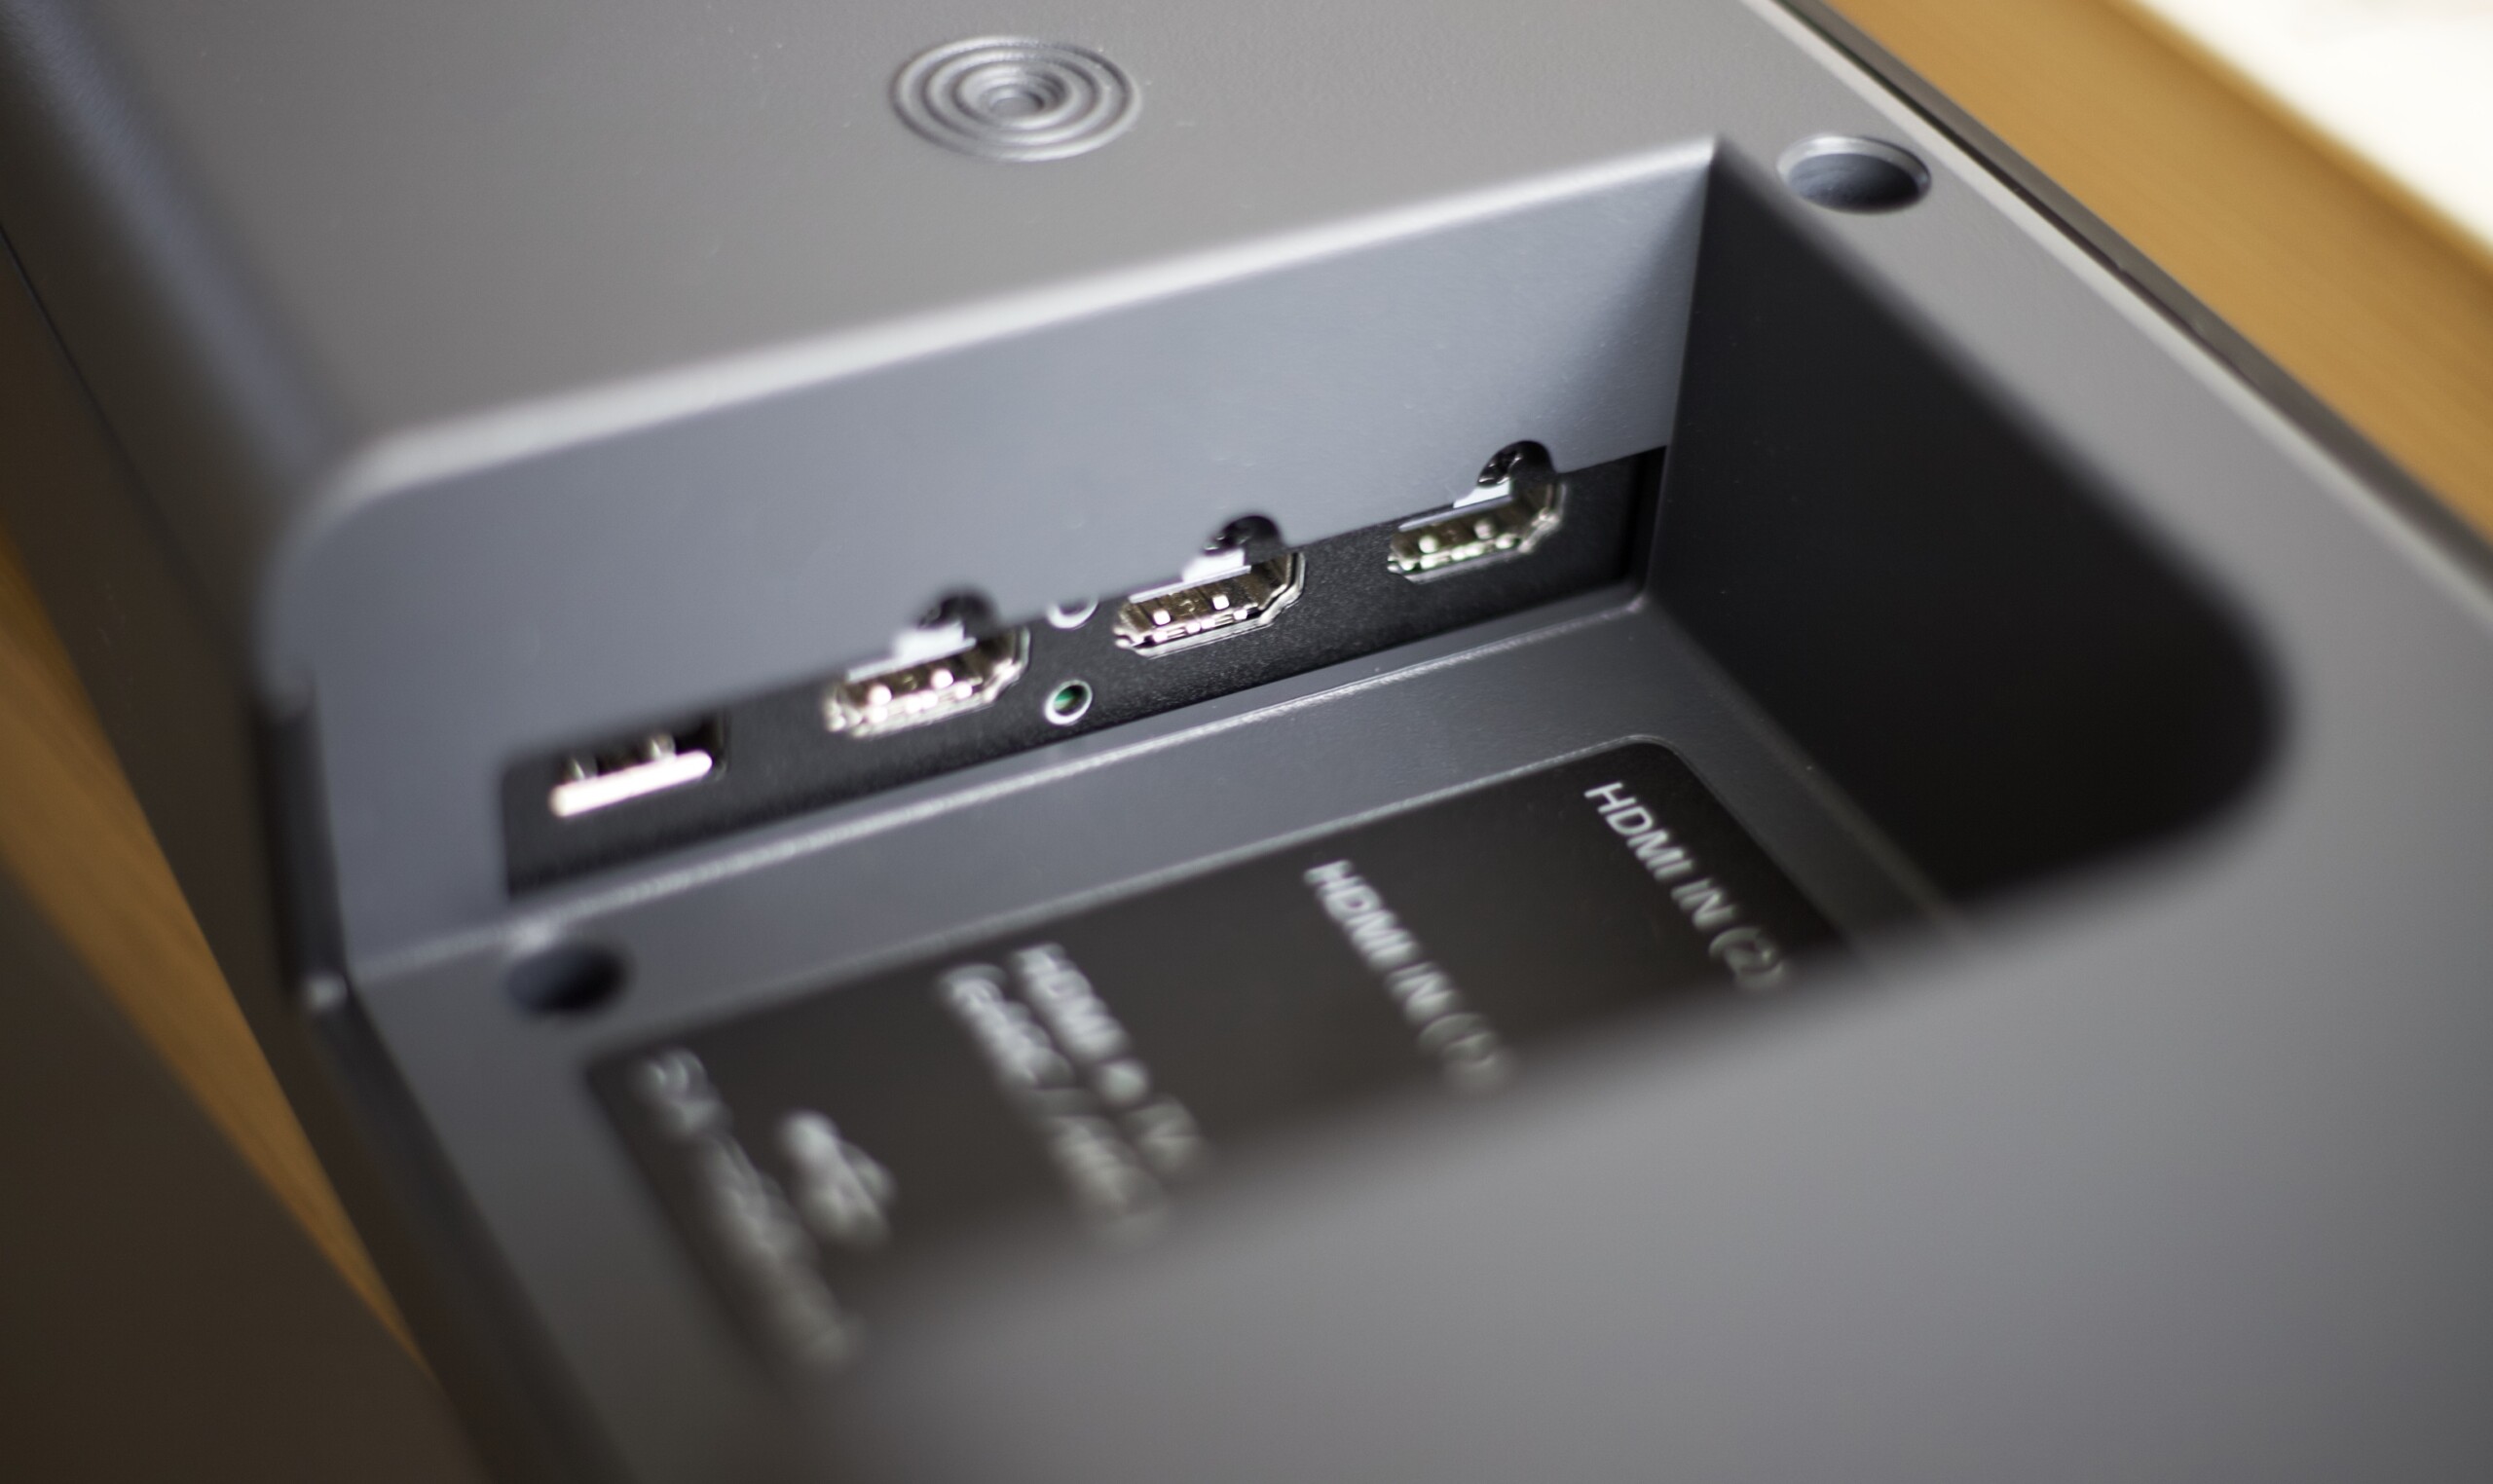 LG déploie sa nouvelle gamme de barres de son 2022 dont la S95QR, son  nouveau fleuron - Les Numériques